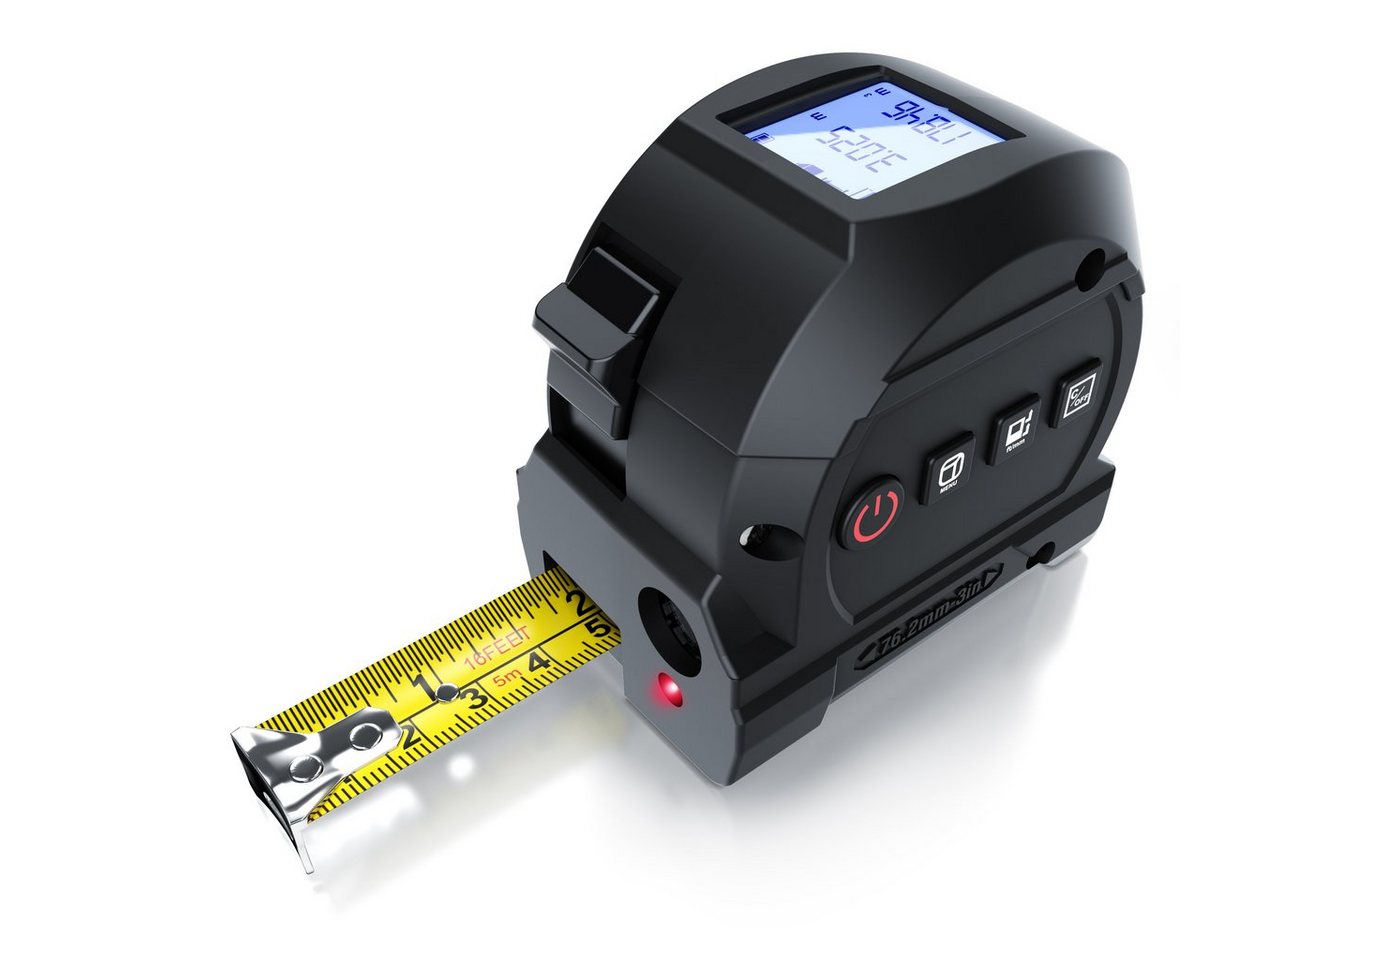 Brandson Lasermessgerät Entfernungsmessgerät mit 5 m Maßband 2 in 1 – Laser bis 40 m, Digital Entfernungsmesser, mini Distanzmessgerät von Brandson